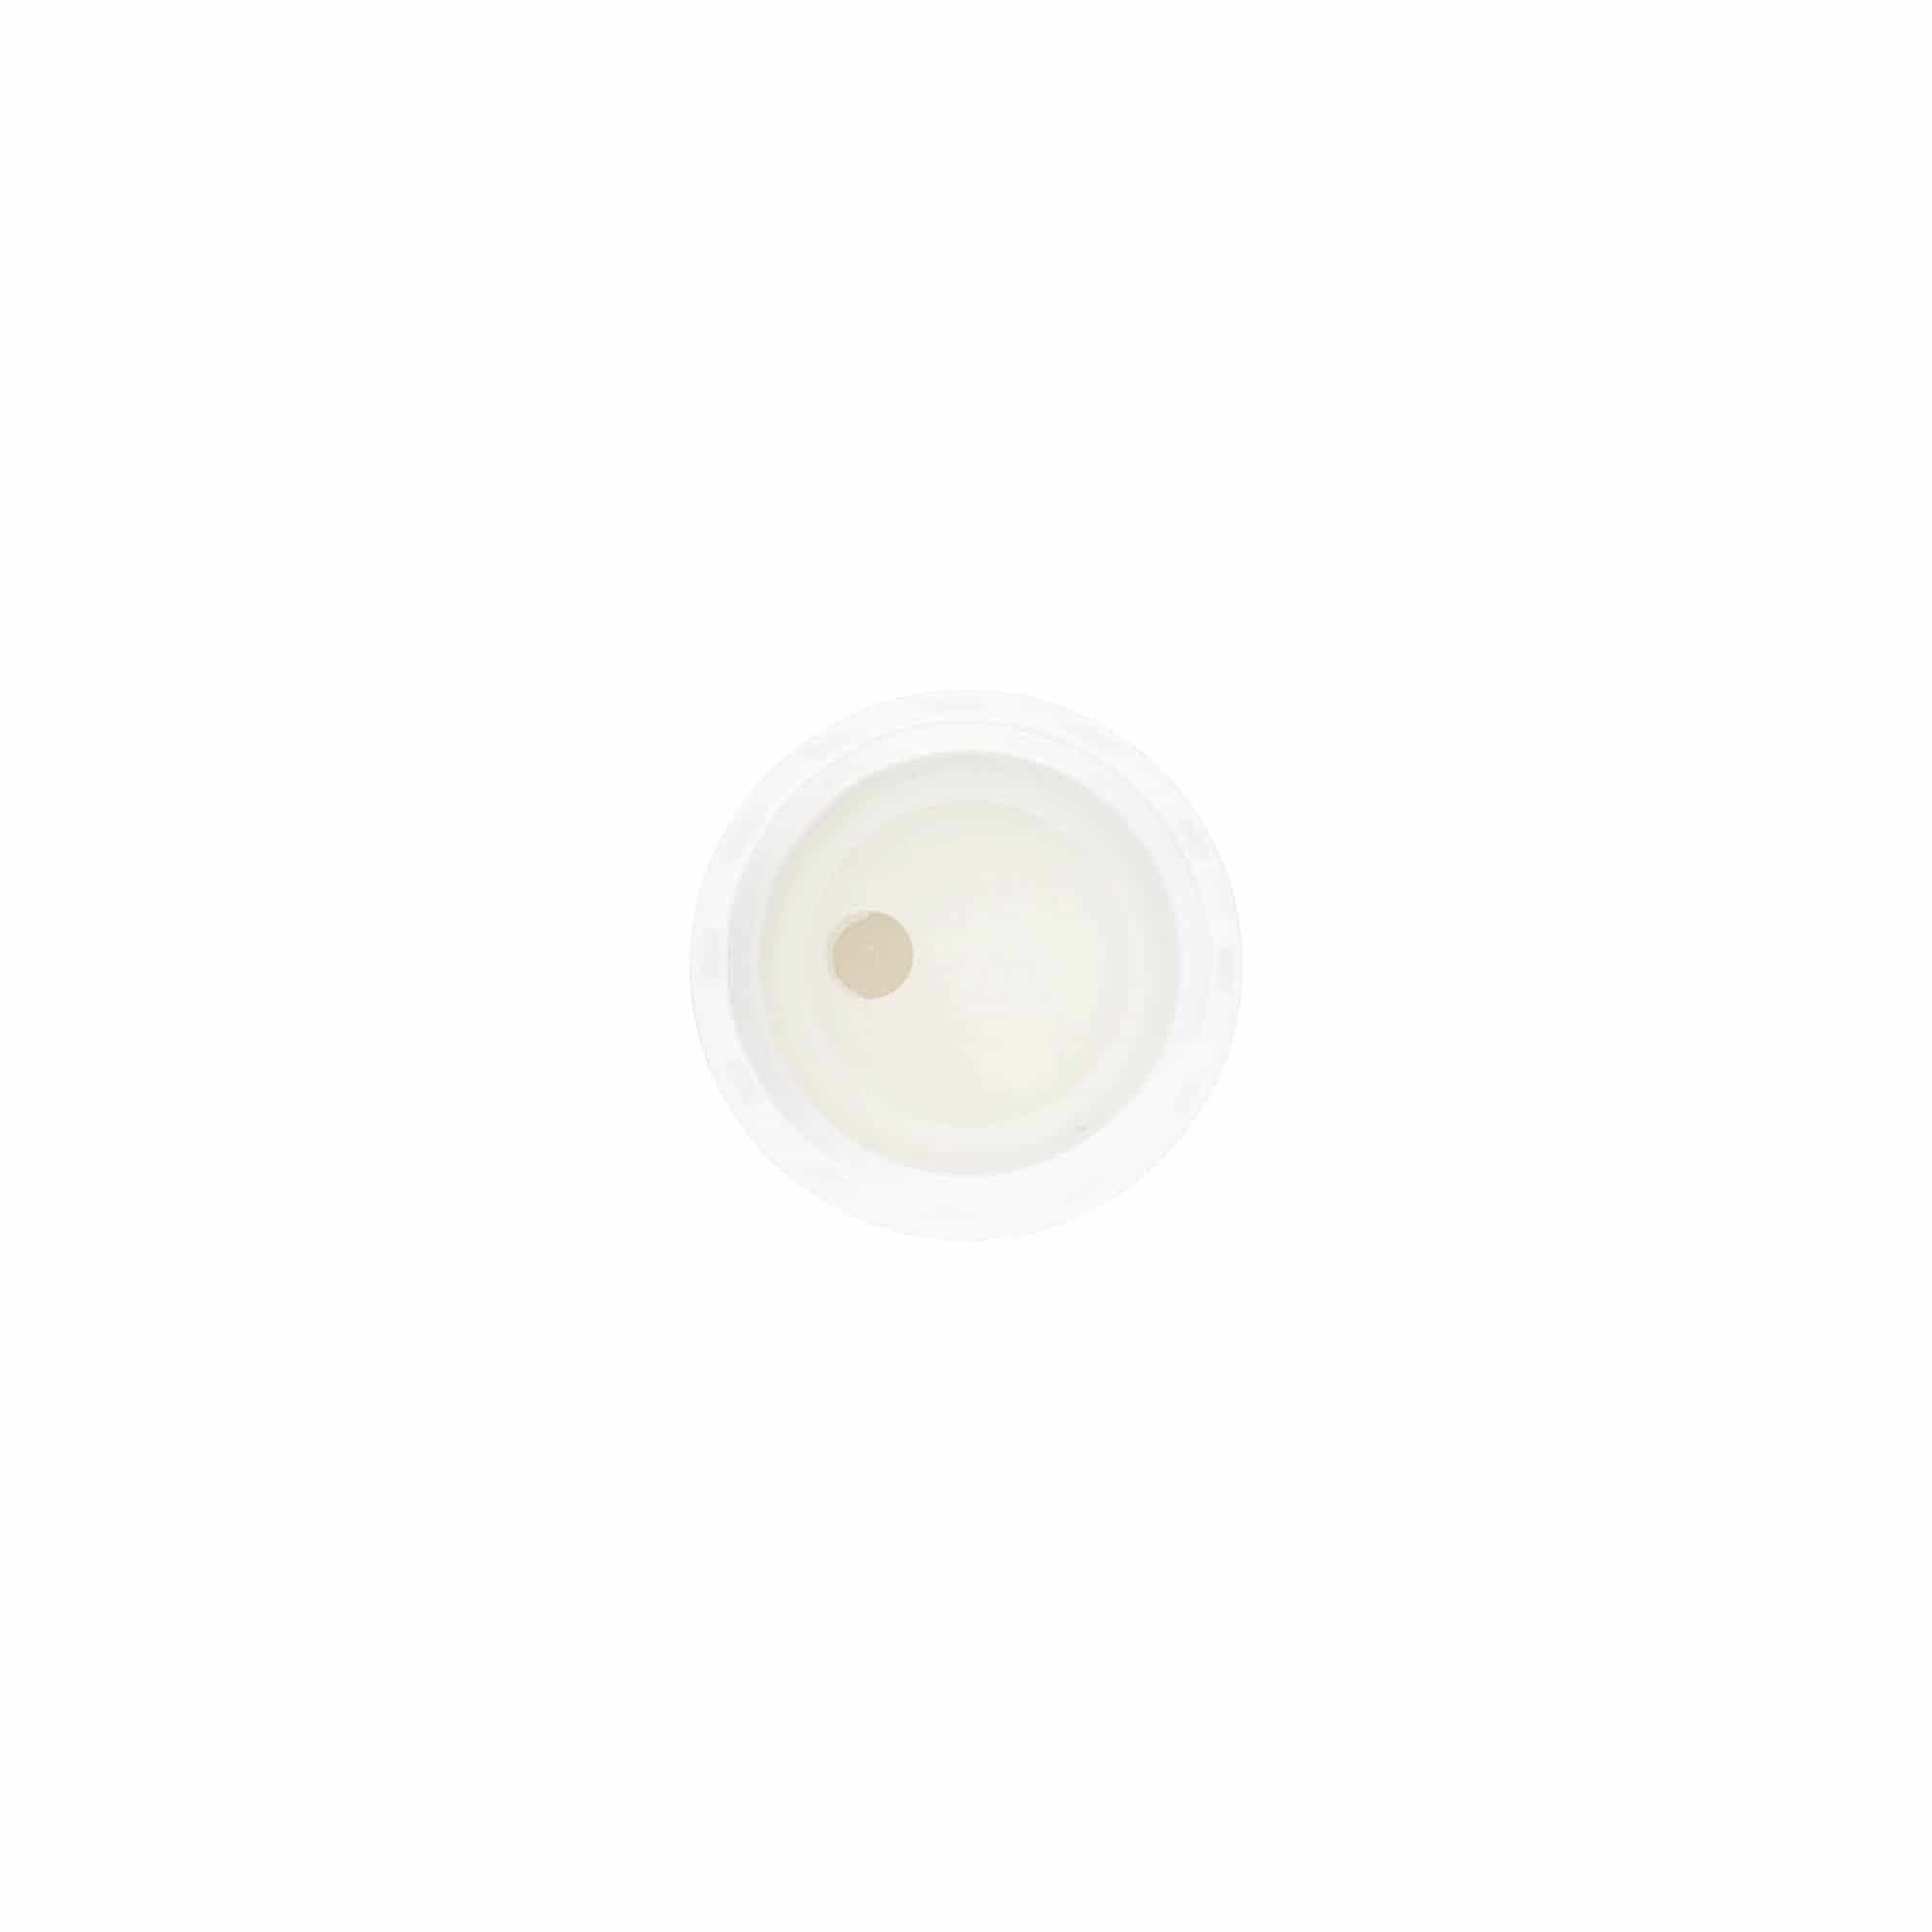 Schraubverschluss Disc Top, PP-Kunststoff, weiß, für Mündung: GPI 20/410